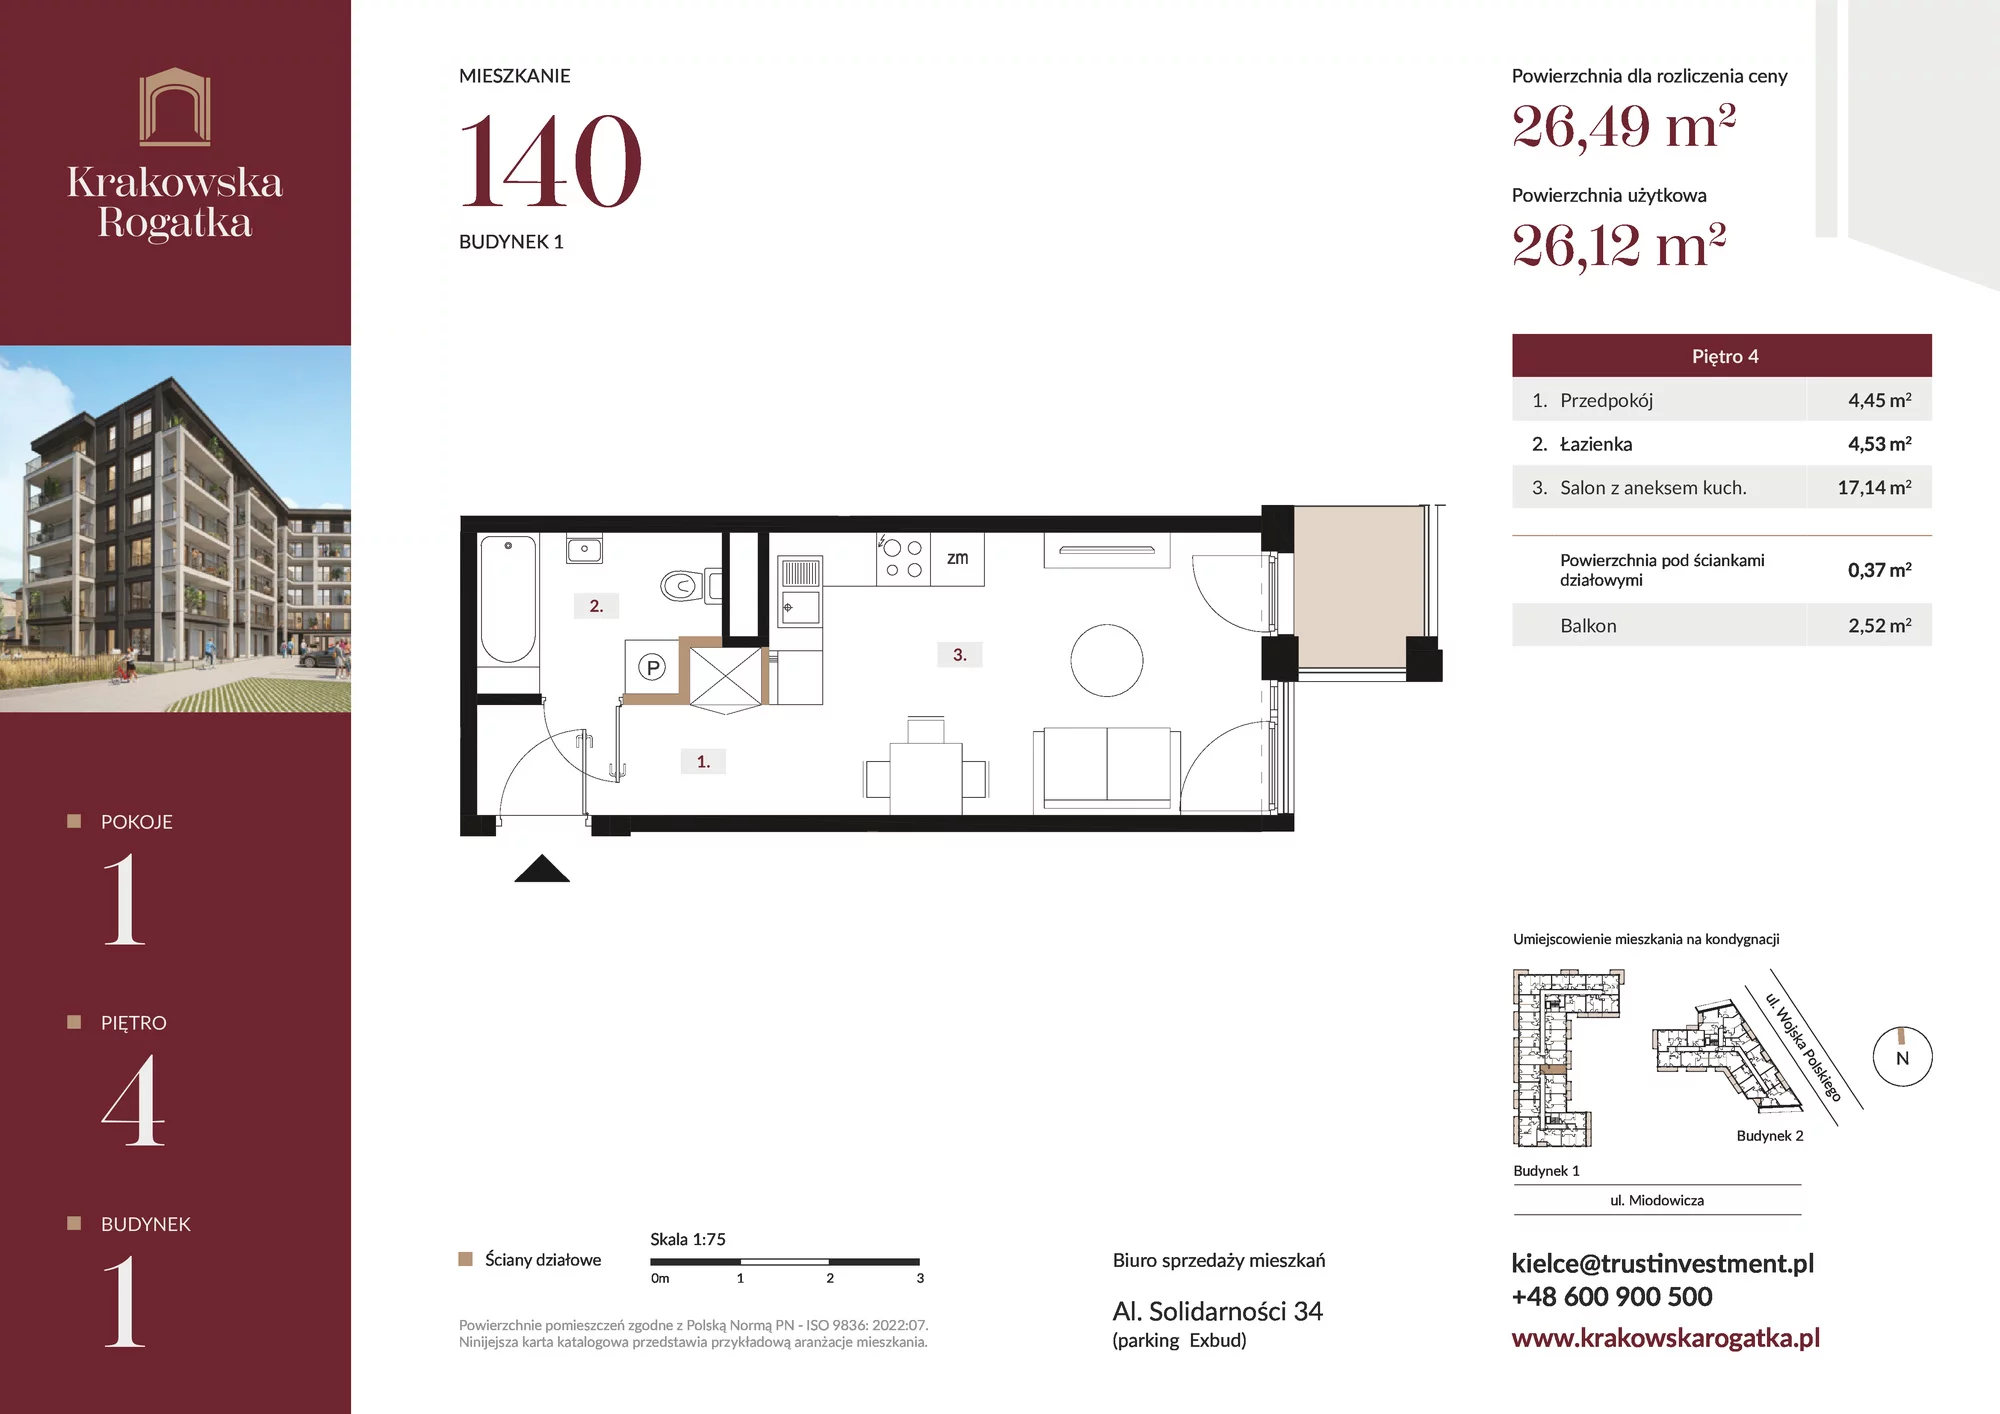 Mieszkanie 26,49 m², piętro 4, oferta nr Budynek 1 Mieszkanie 140, Krakowska Rogatka, Kielce, ul. Miodowicza 1